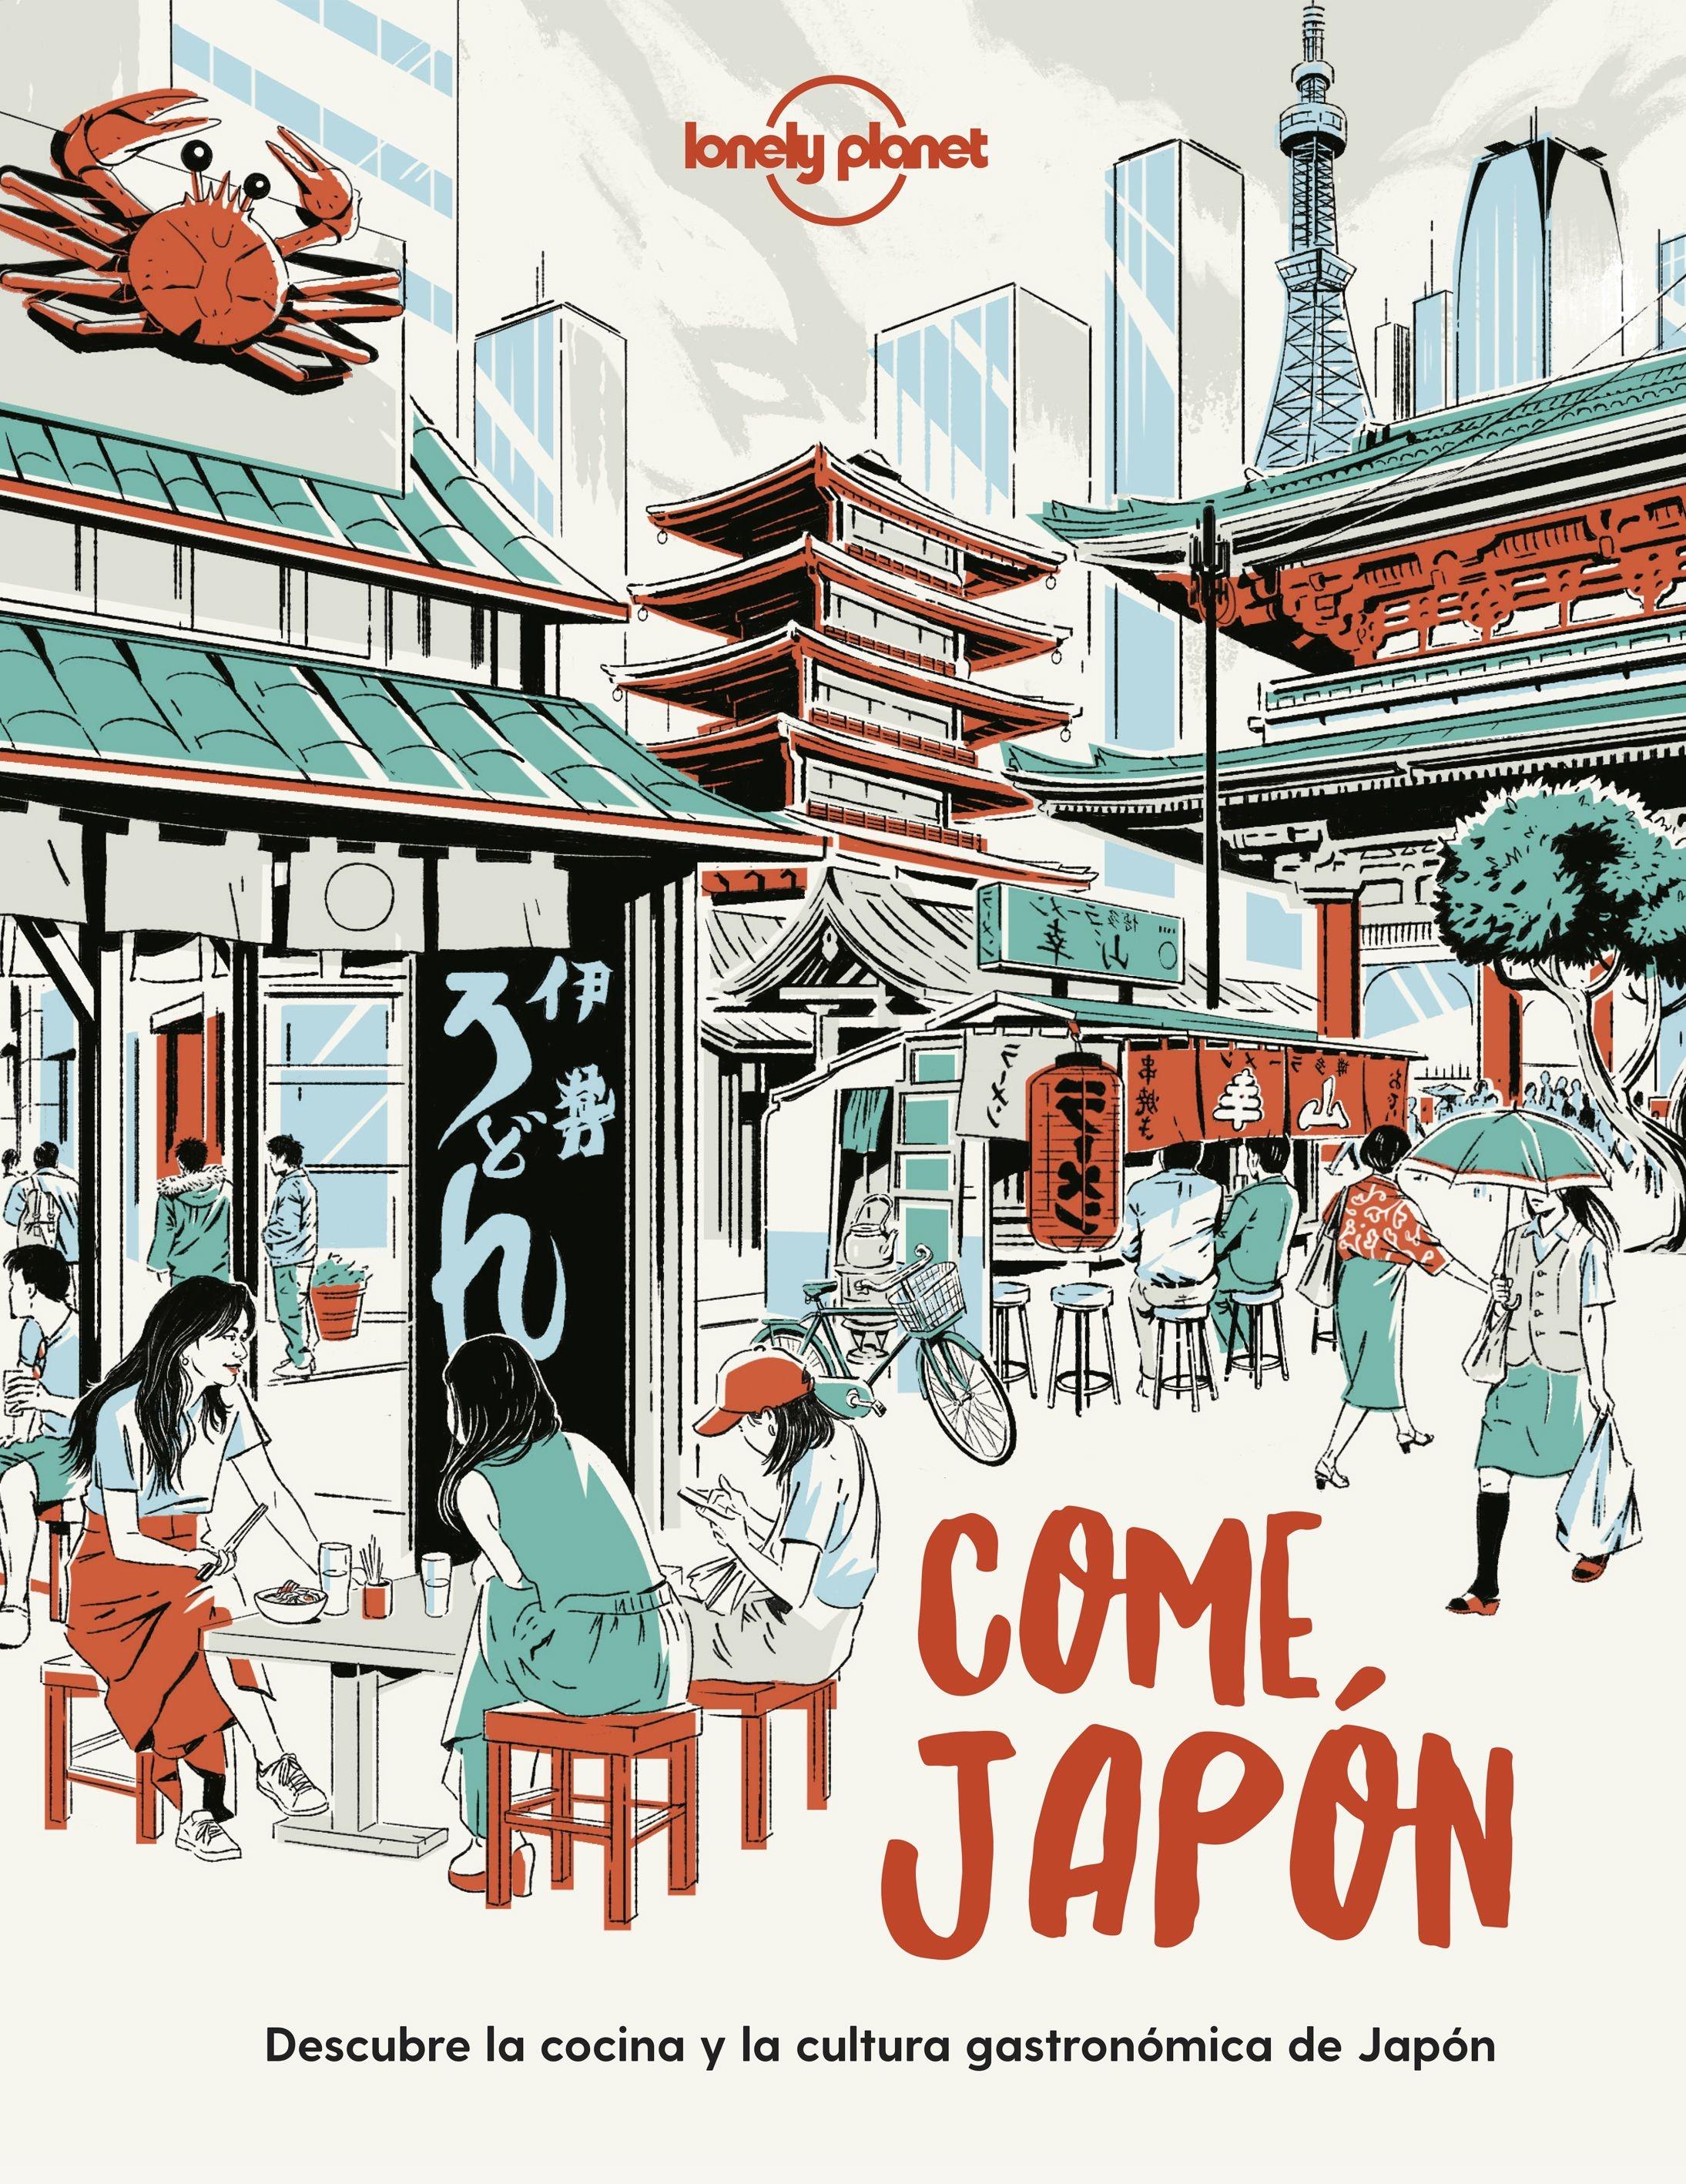 Come Japón "Descubre la cocina y la cultura gastronómica japonesas"